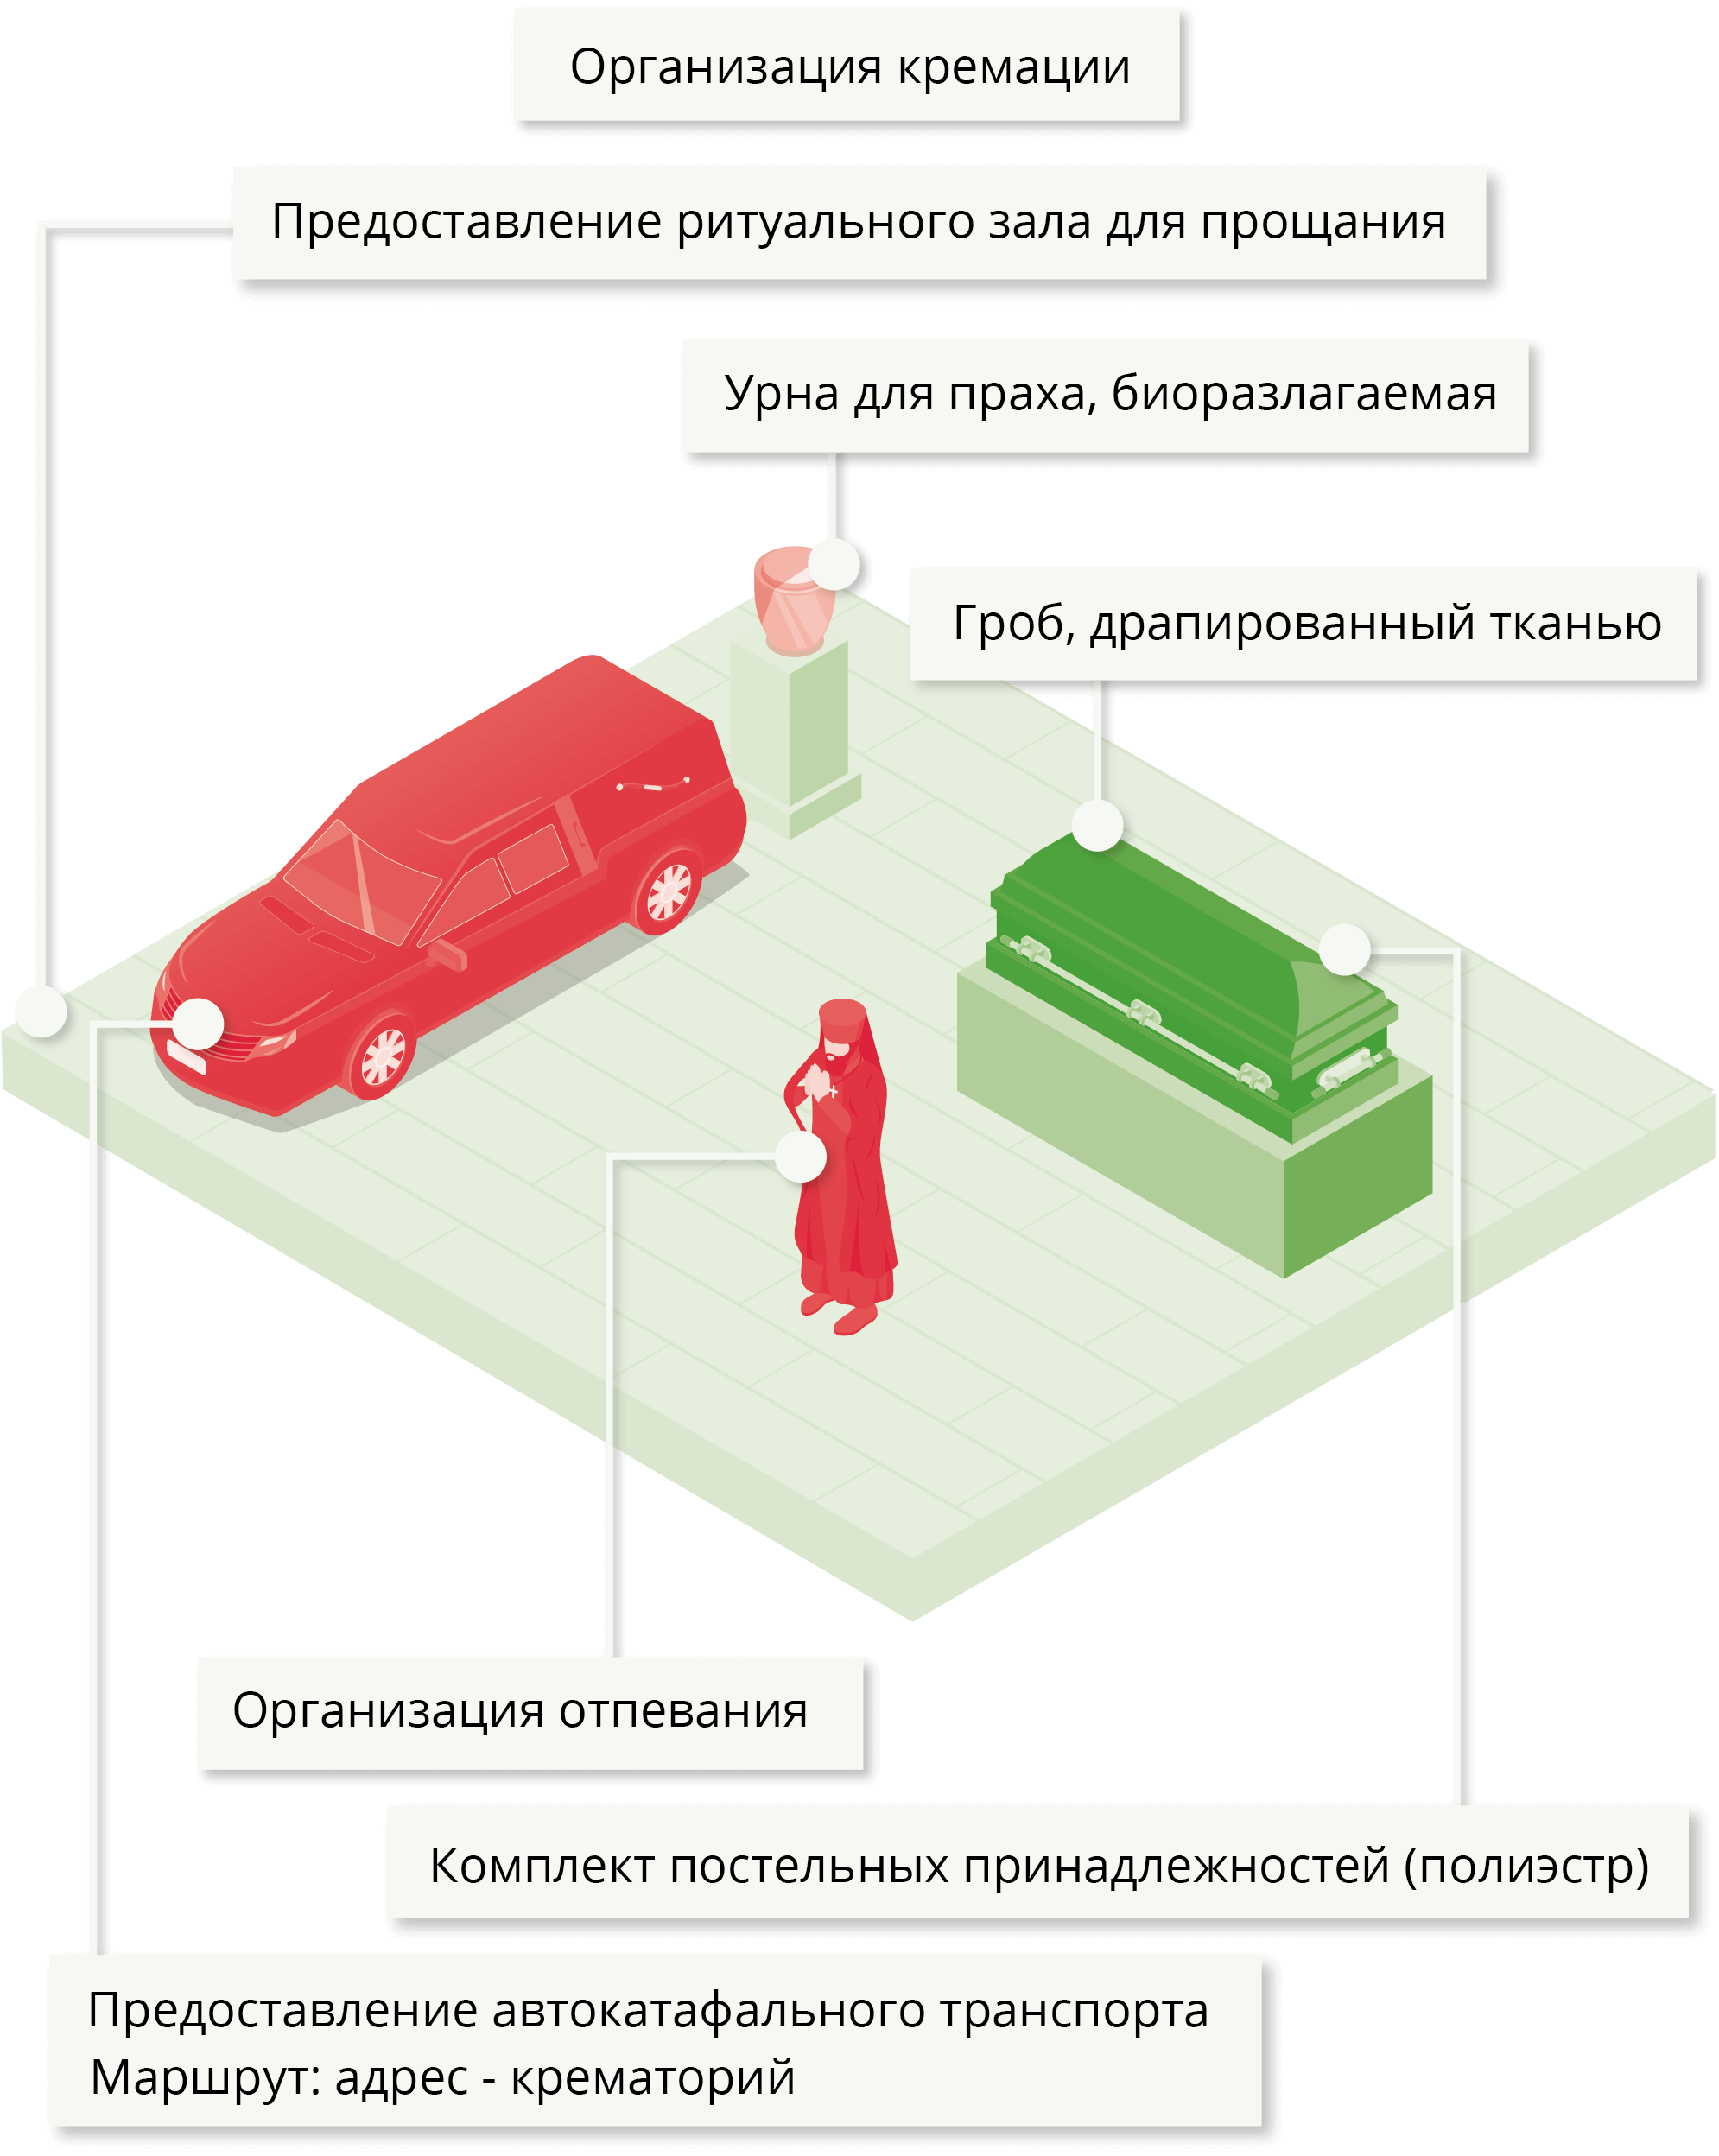 Стоимость похорон с кремацией в Минске, план похорон стандартный